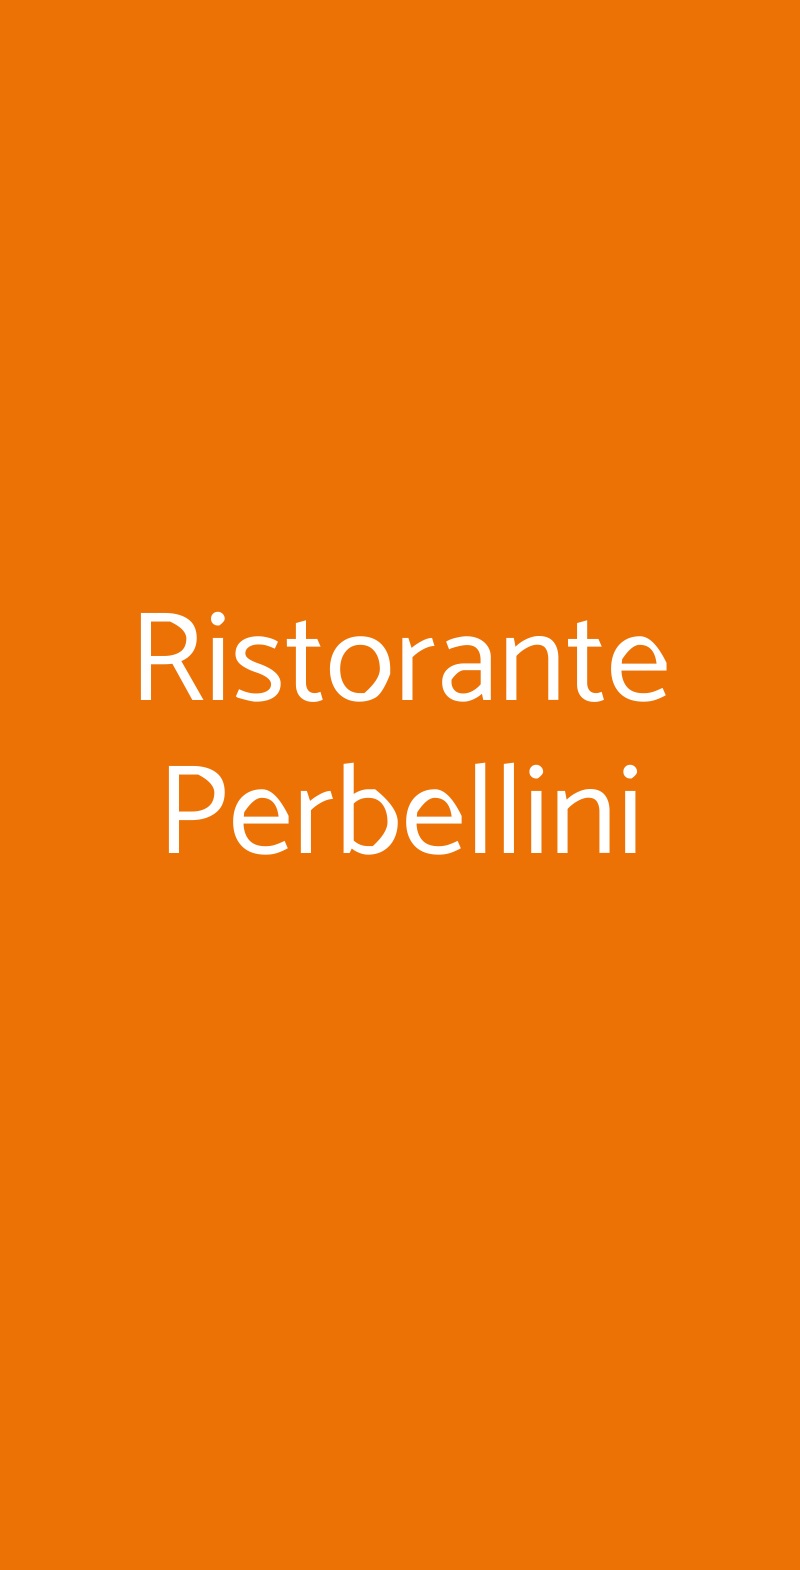 Ristorante Perbellini Isola Rizza menù 1 pagina